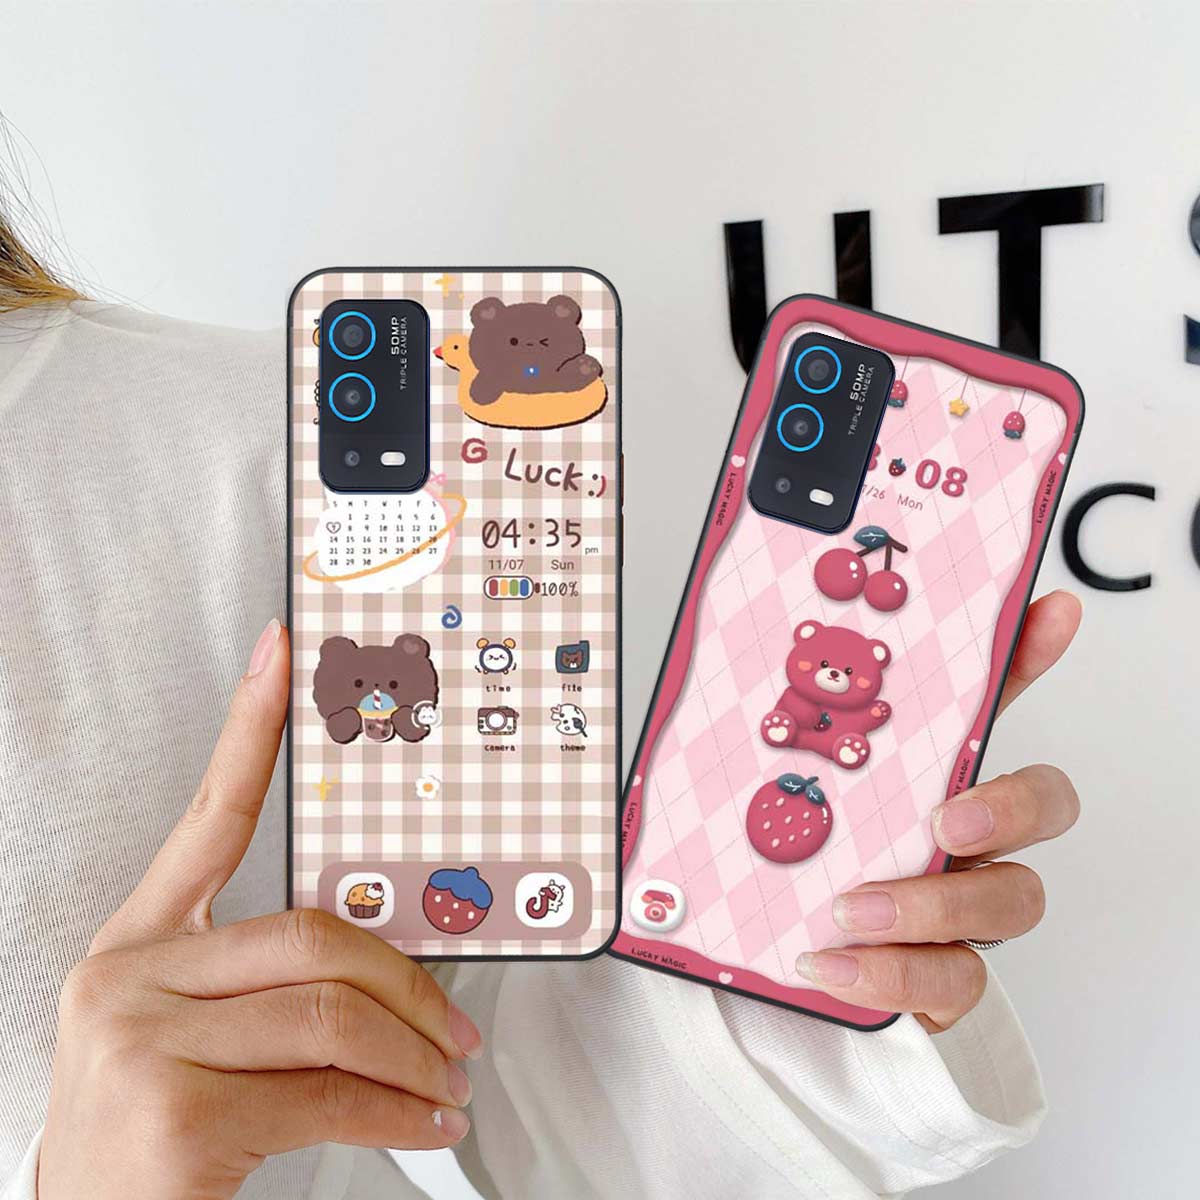 Ốp Xinh Cute - Tô điểm cho chiếc điện thoại của bạn với những chiếc ốp xinh cute giúp bạn tỏa sáng một cách dễ dàng. Hãy khám phá ngay những thiết kế độc đáo, đáng yêu cùng chất liệu tốt nhất cho điện thoại của bạn!